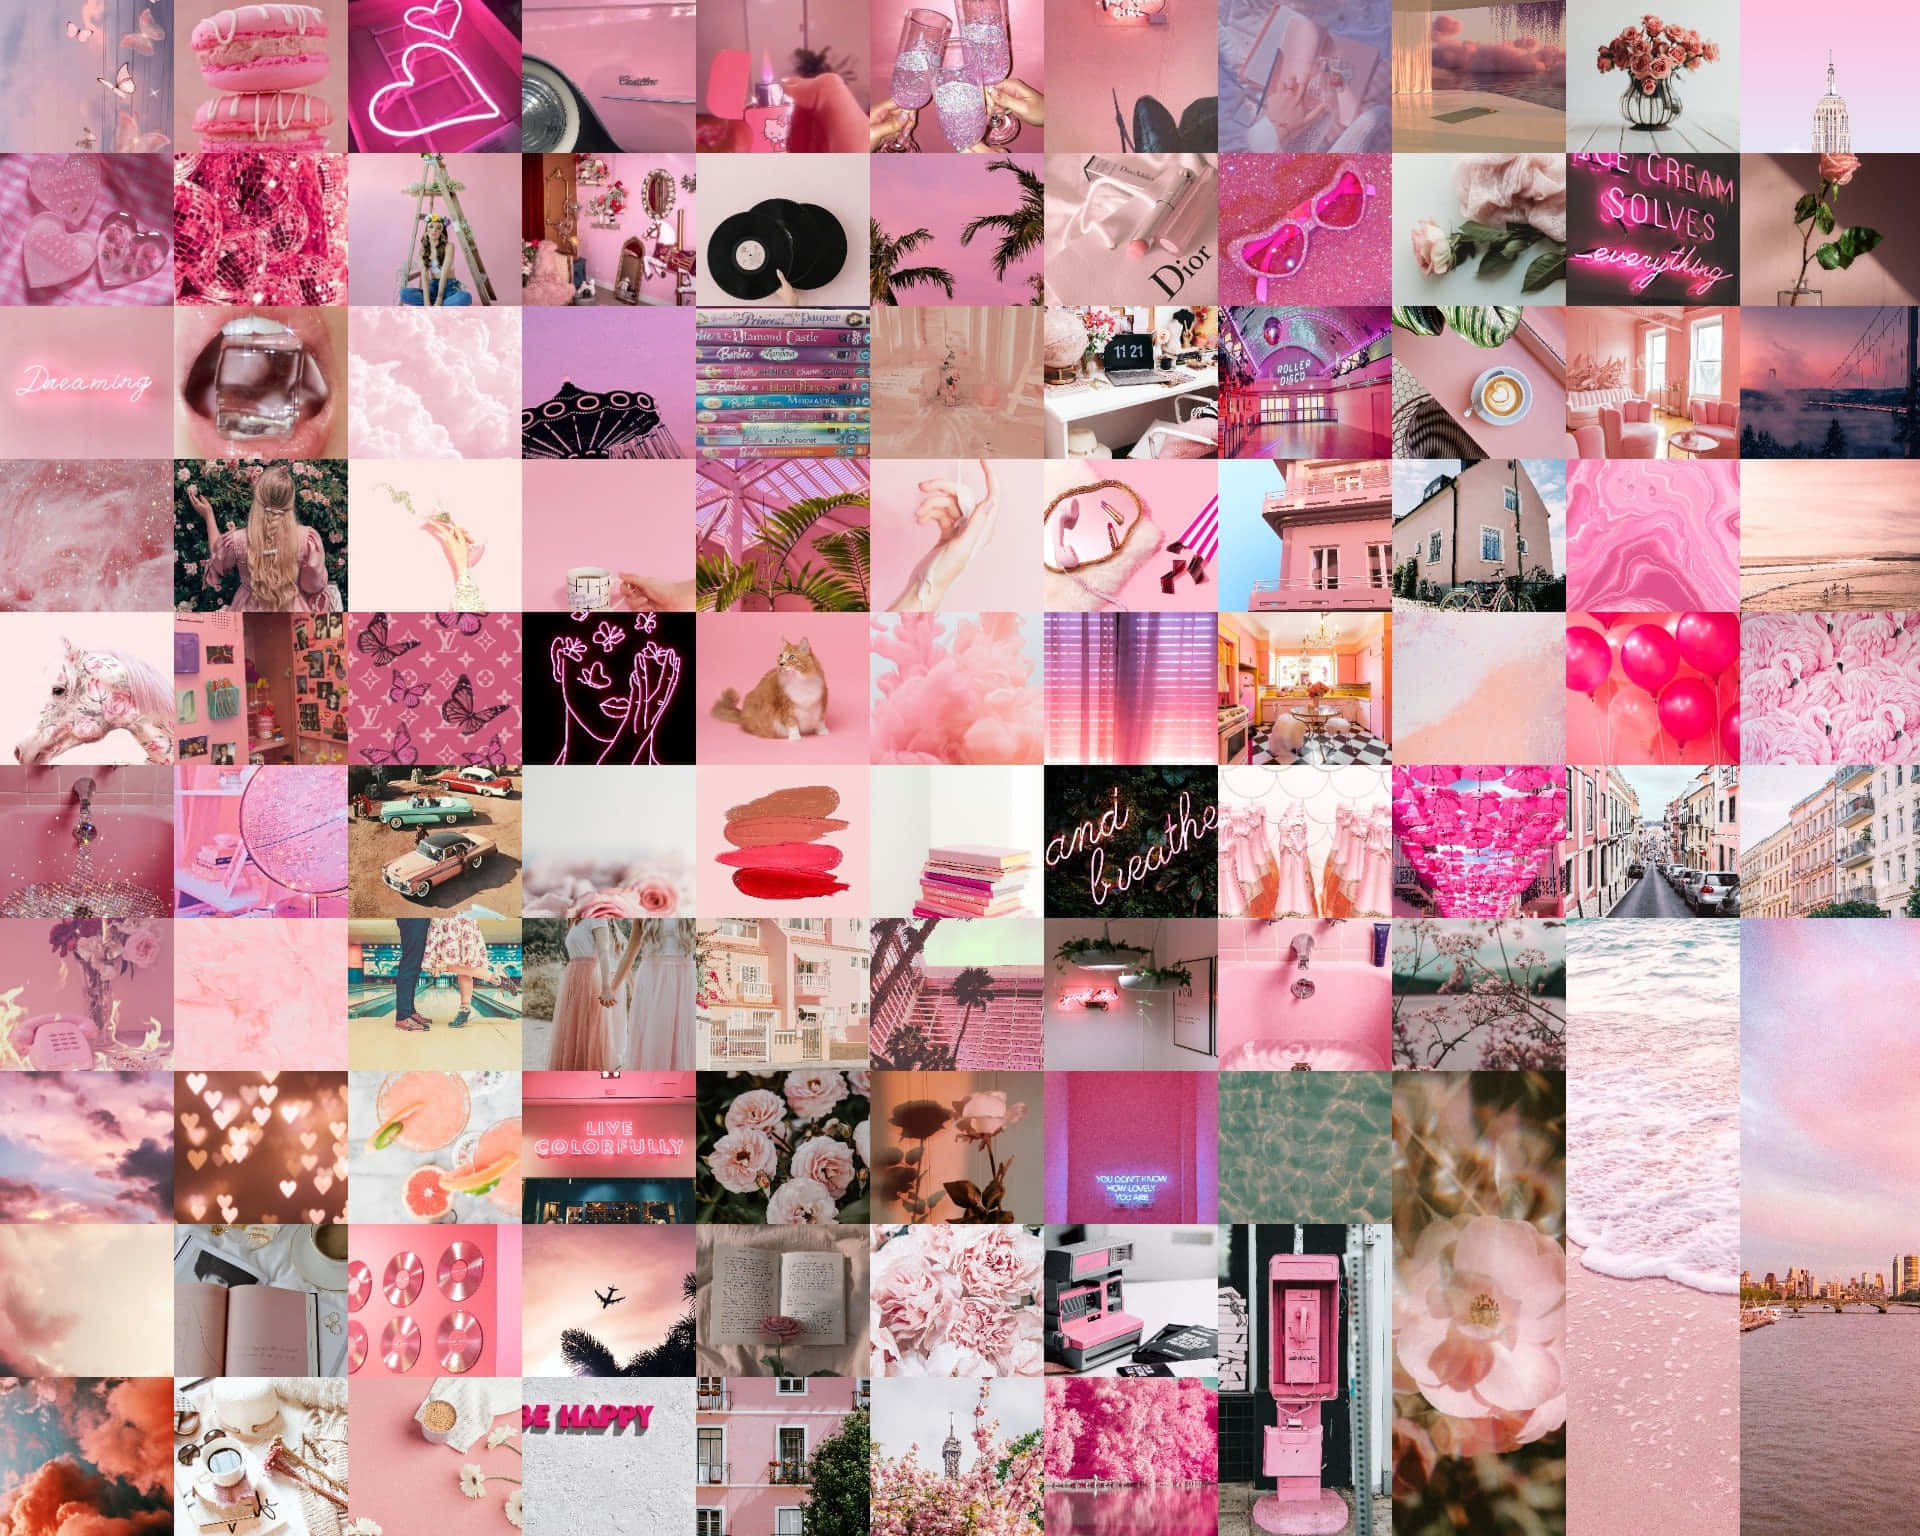 Pink Wallpapers, Pink Wallpapers, Pink Wallpapers, Pink Wallpapers, Pink Wallpapers, Pink Wallpapers, Pink Wallpapers, Pink Wallpapers, Wallpaper